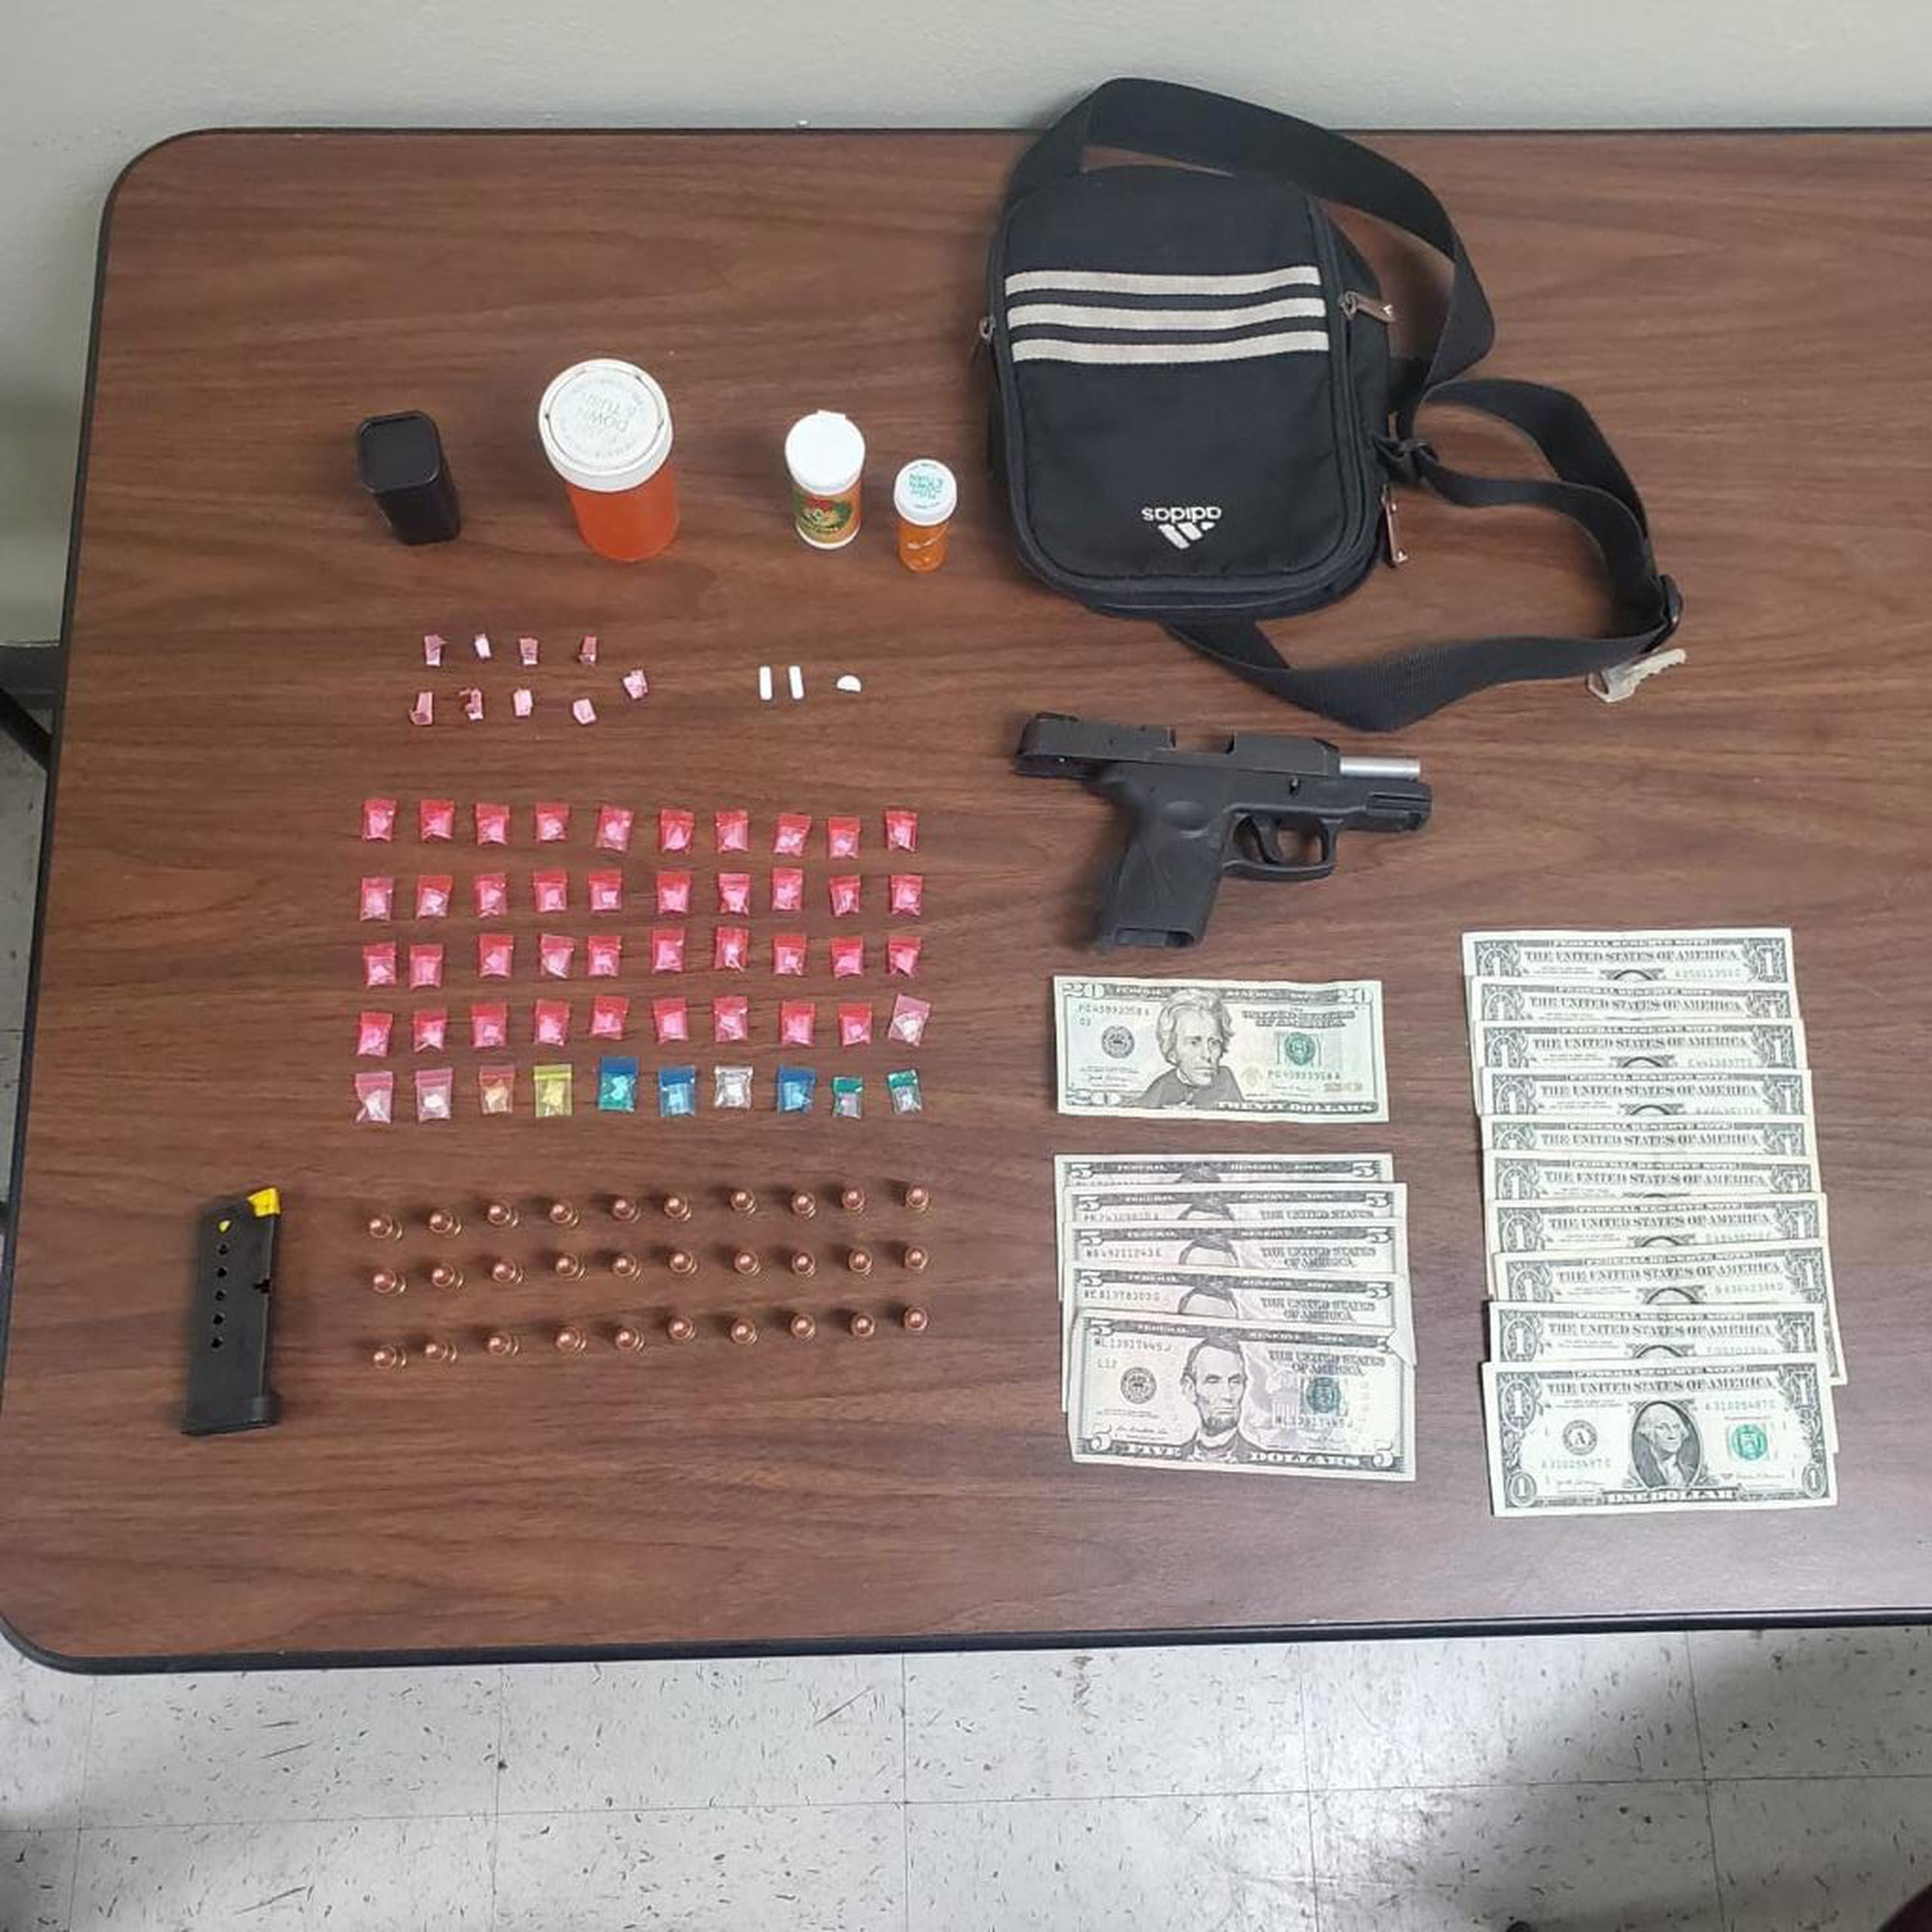 Los agentes le ocuparon a un individuo arrestado, una pistola Taurus de calibre 9 milímetros, un cargador con 30 municiones, 50 bolsitas con “crack”, 9 bolsitas con heroína, medicamentos controlados y $55 en efectivo.